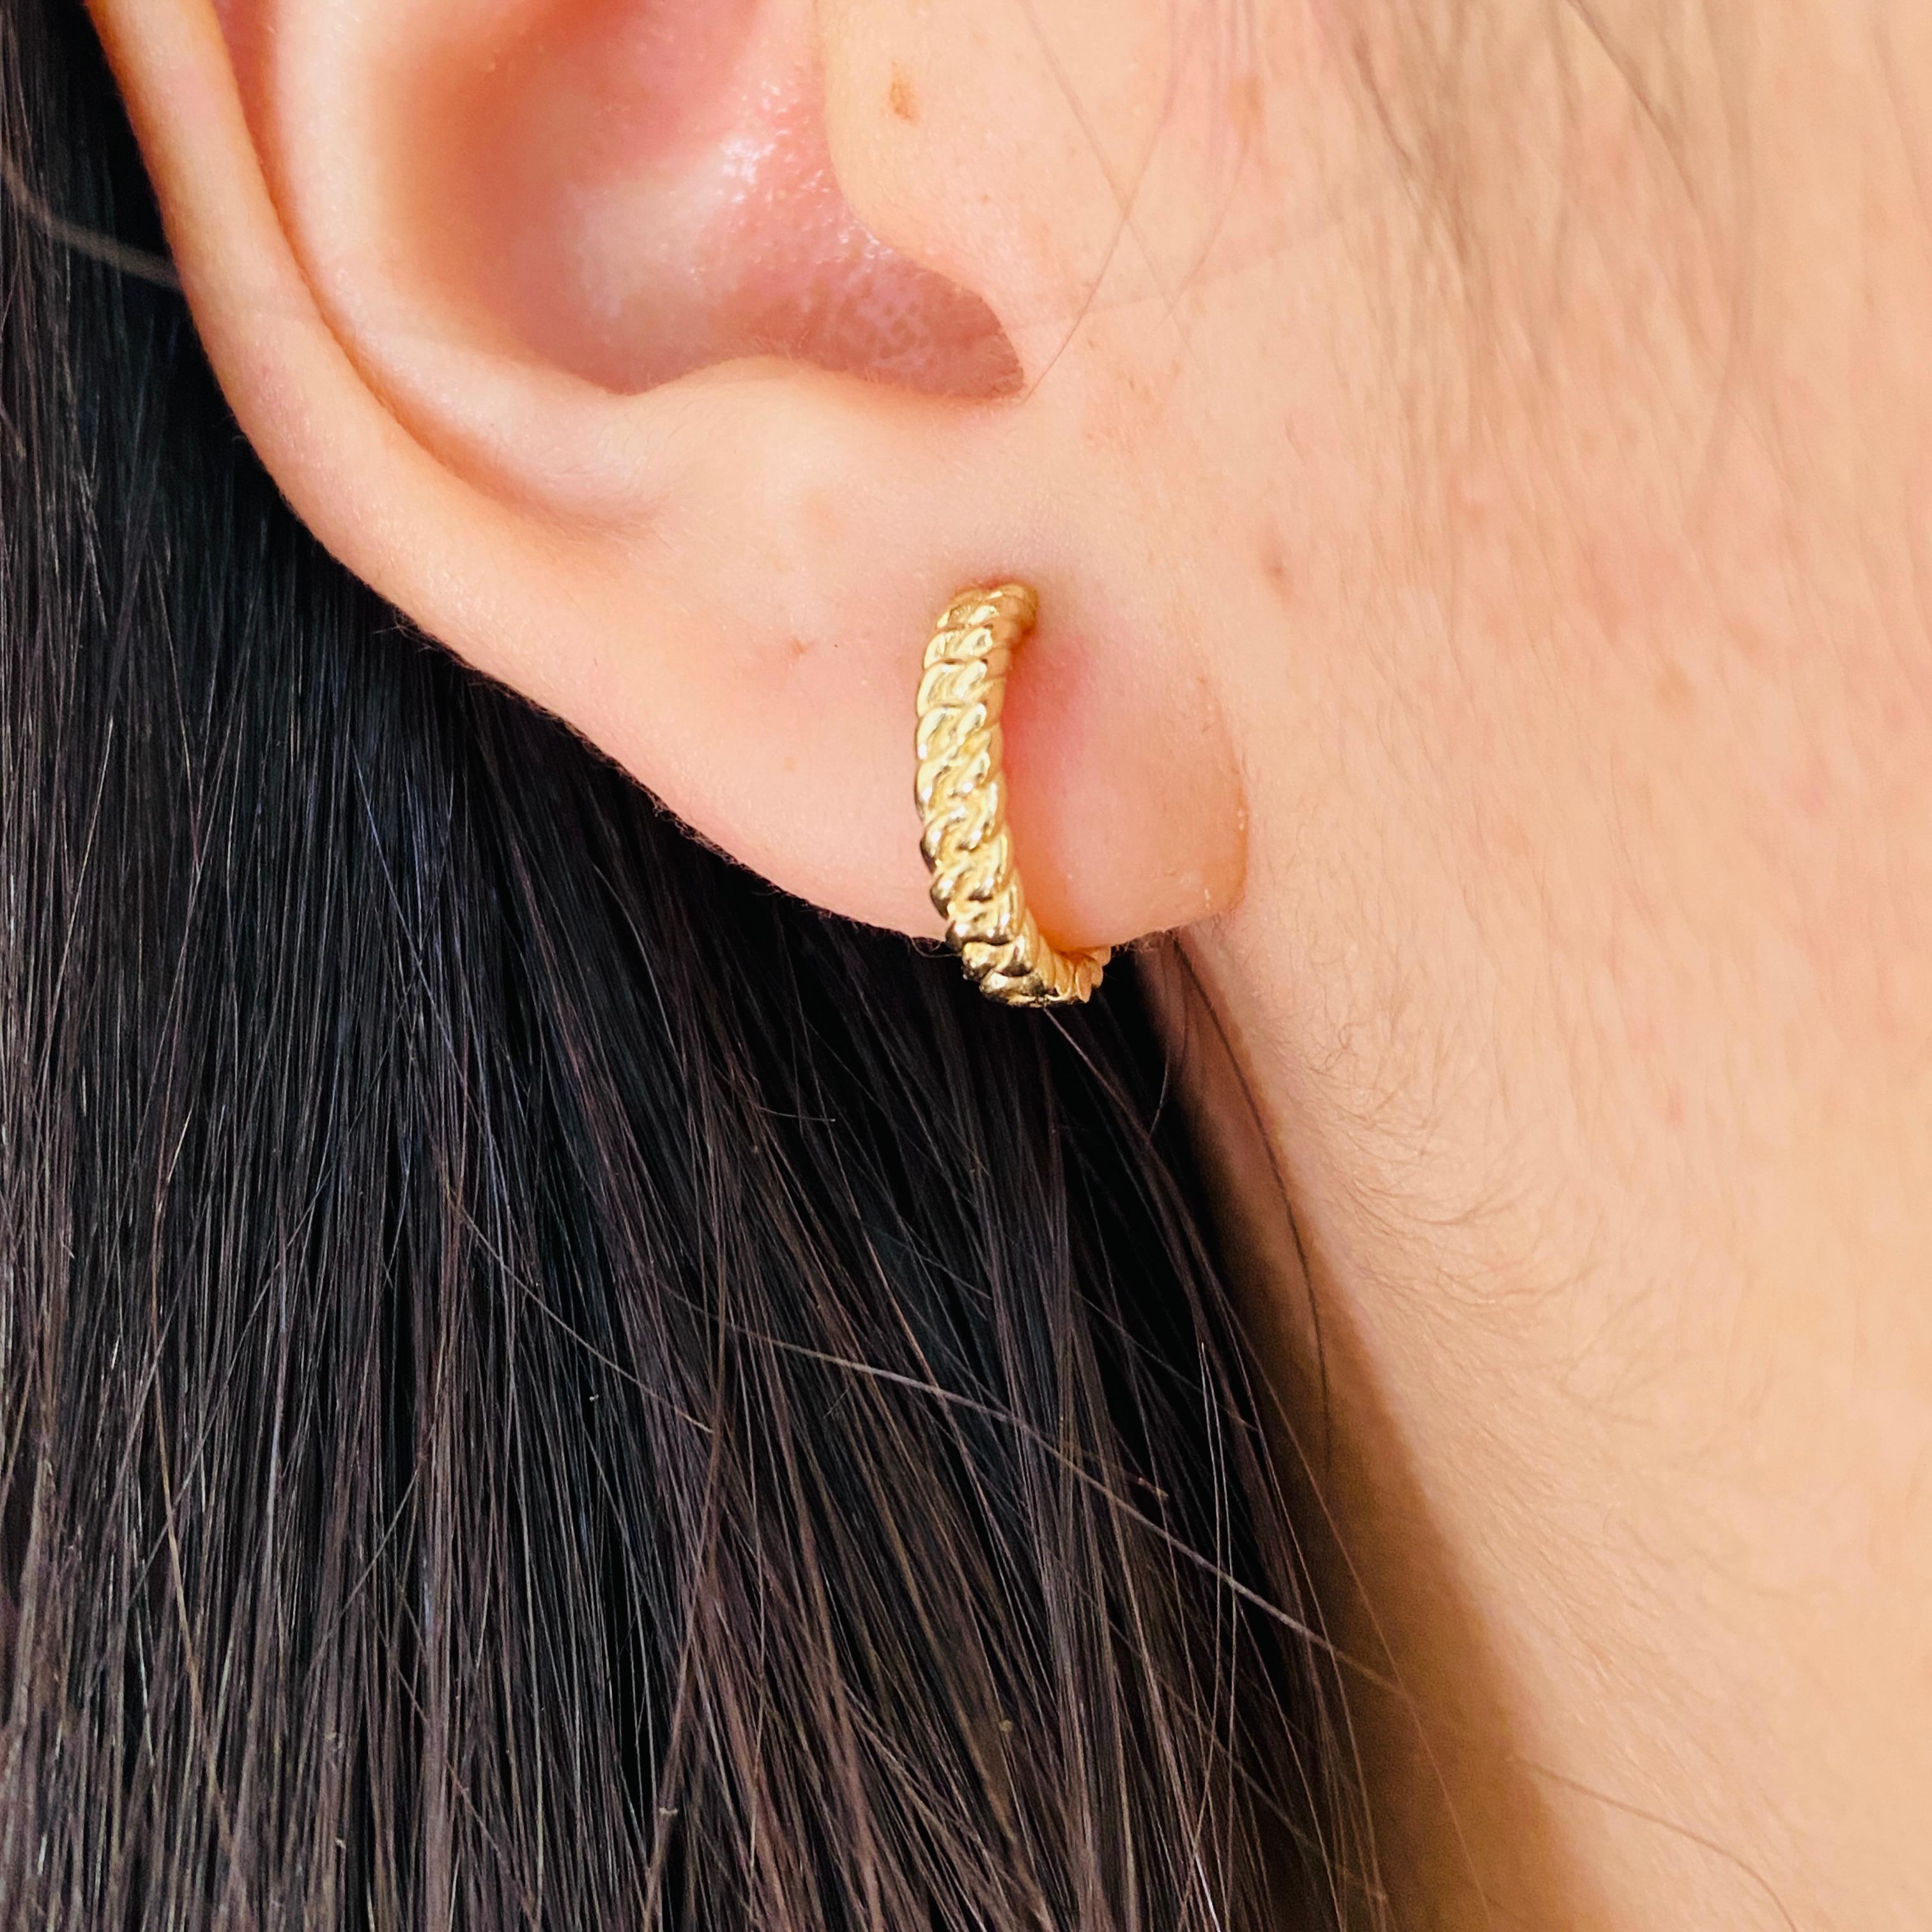 Diese geflochtenen Schönheiten sind der perfekte Ohrring zum Umwickeln Ihres Ohrläppchens! Das geflochtene Design dieser zierlichen Creolen ist klassisch und perfekt für den Alltag. Wenn Sie sie einmal ausprobiert haben, wissen Sie, warum Huggie